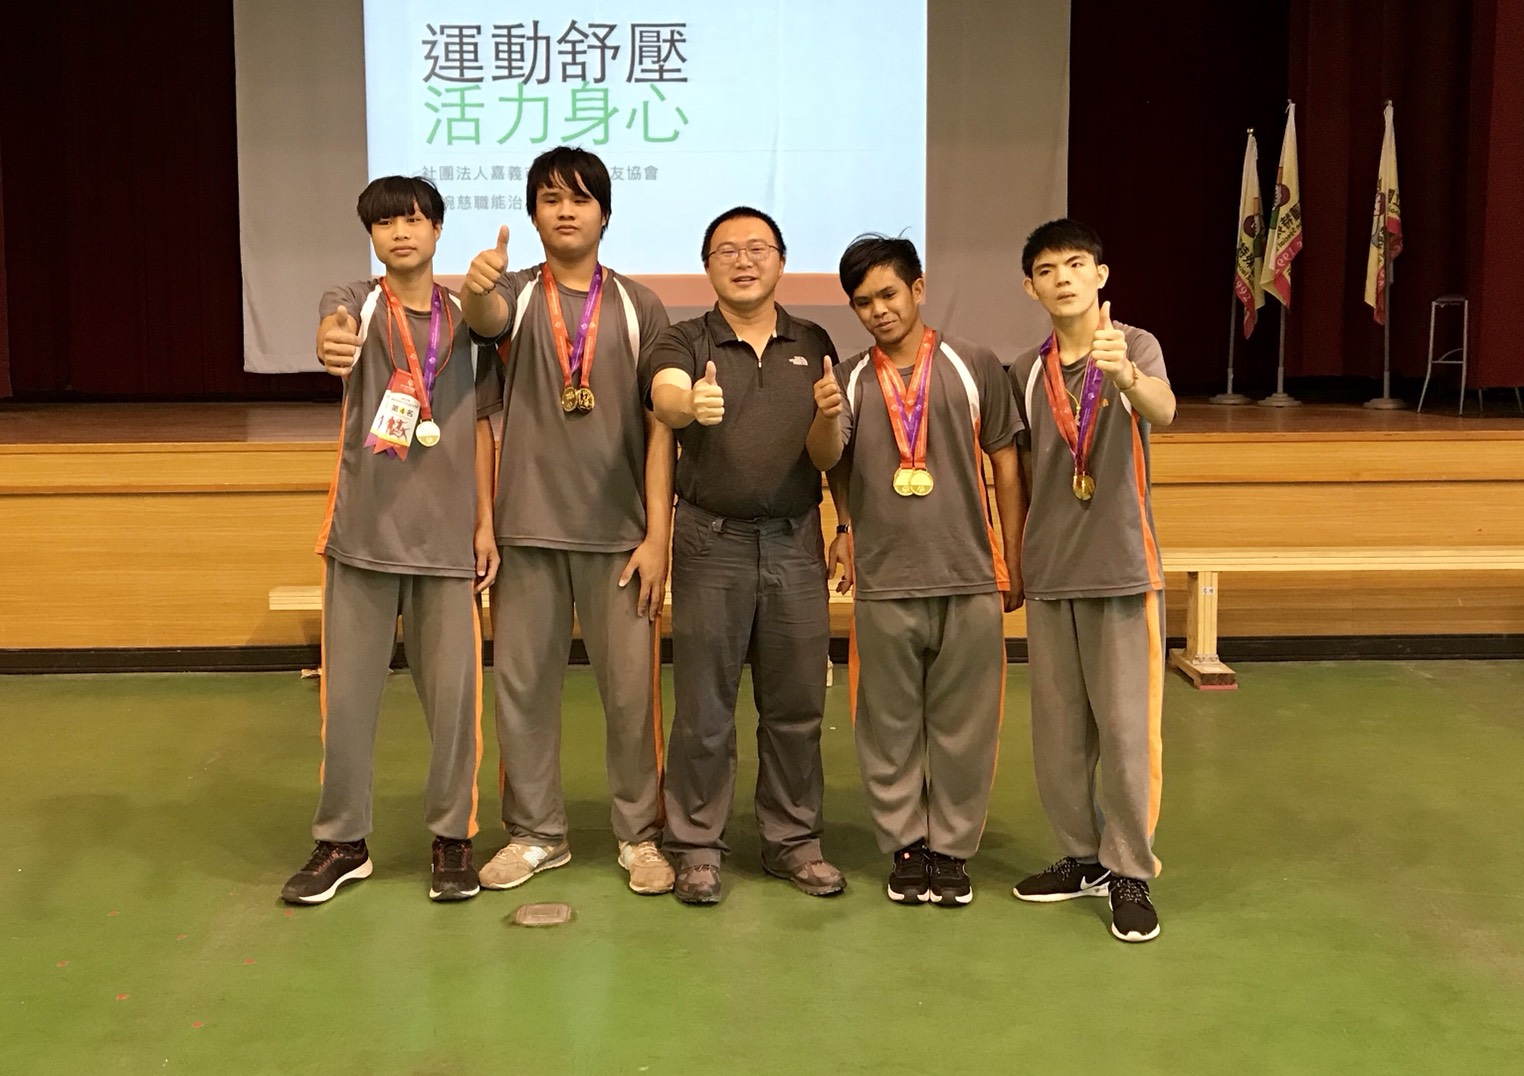 本校學生參加「2018年國際特奧東亞區田徑賽」榮獲優異成績獲獎照片